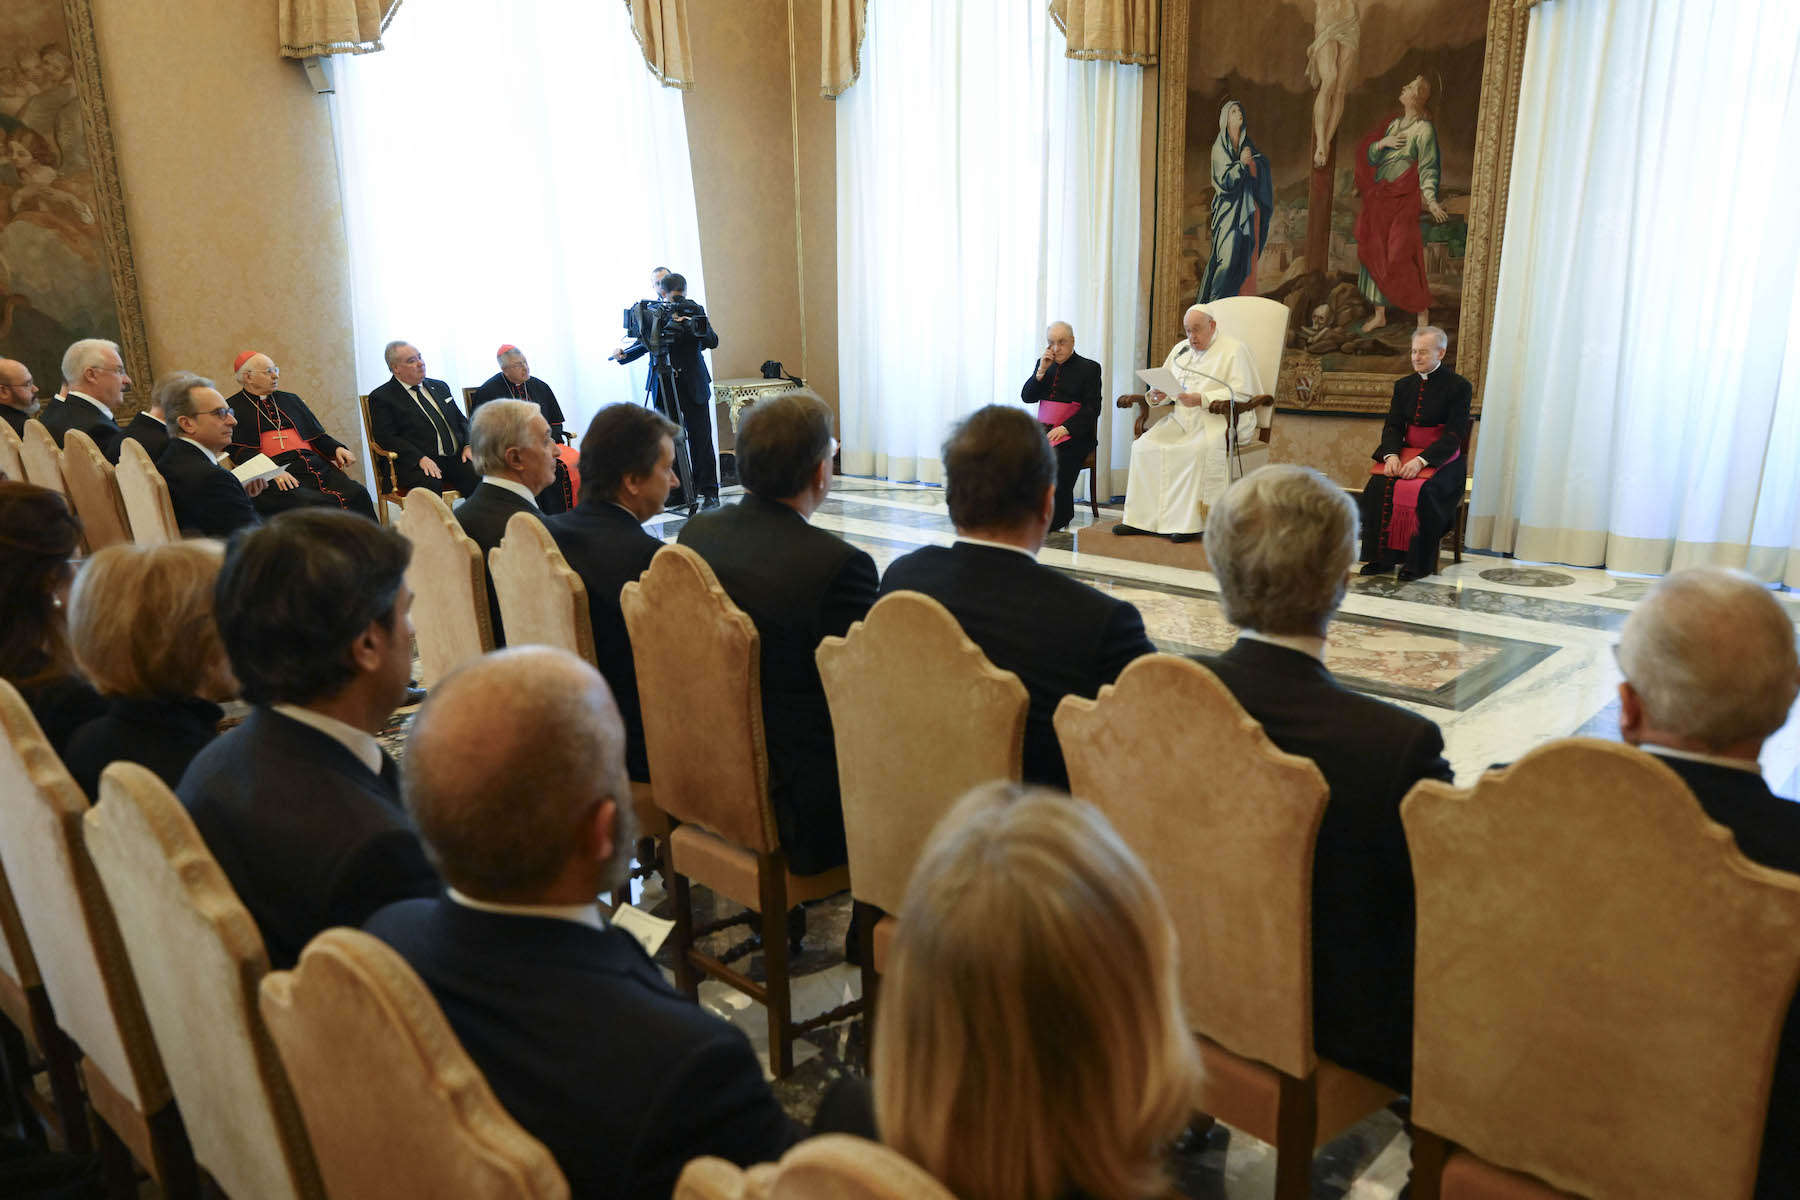 L’audience avec le Saint-Père ouvre les travaux de la dernière journée de la Conférence des ambassadeurs de l’Ordre de Malte